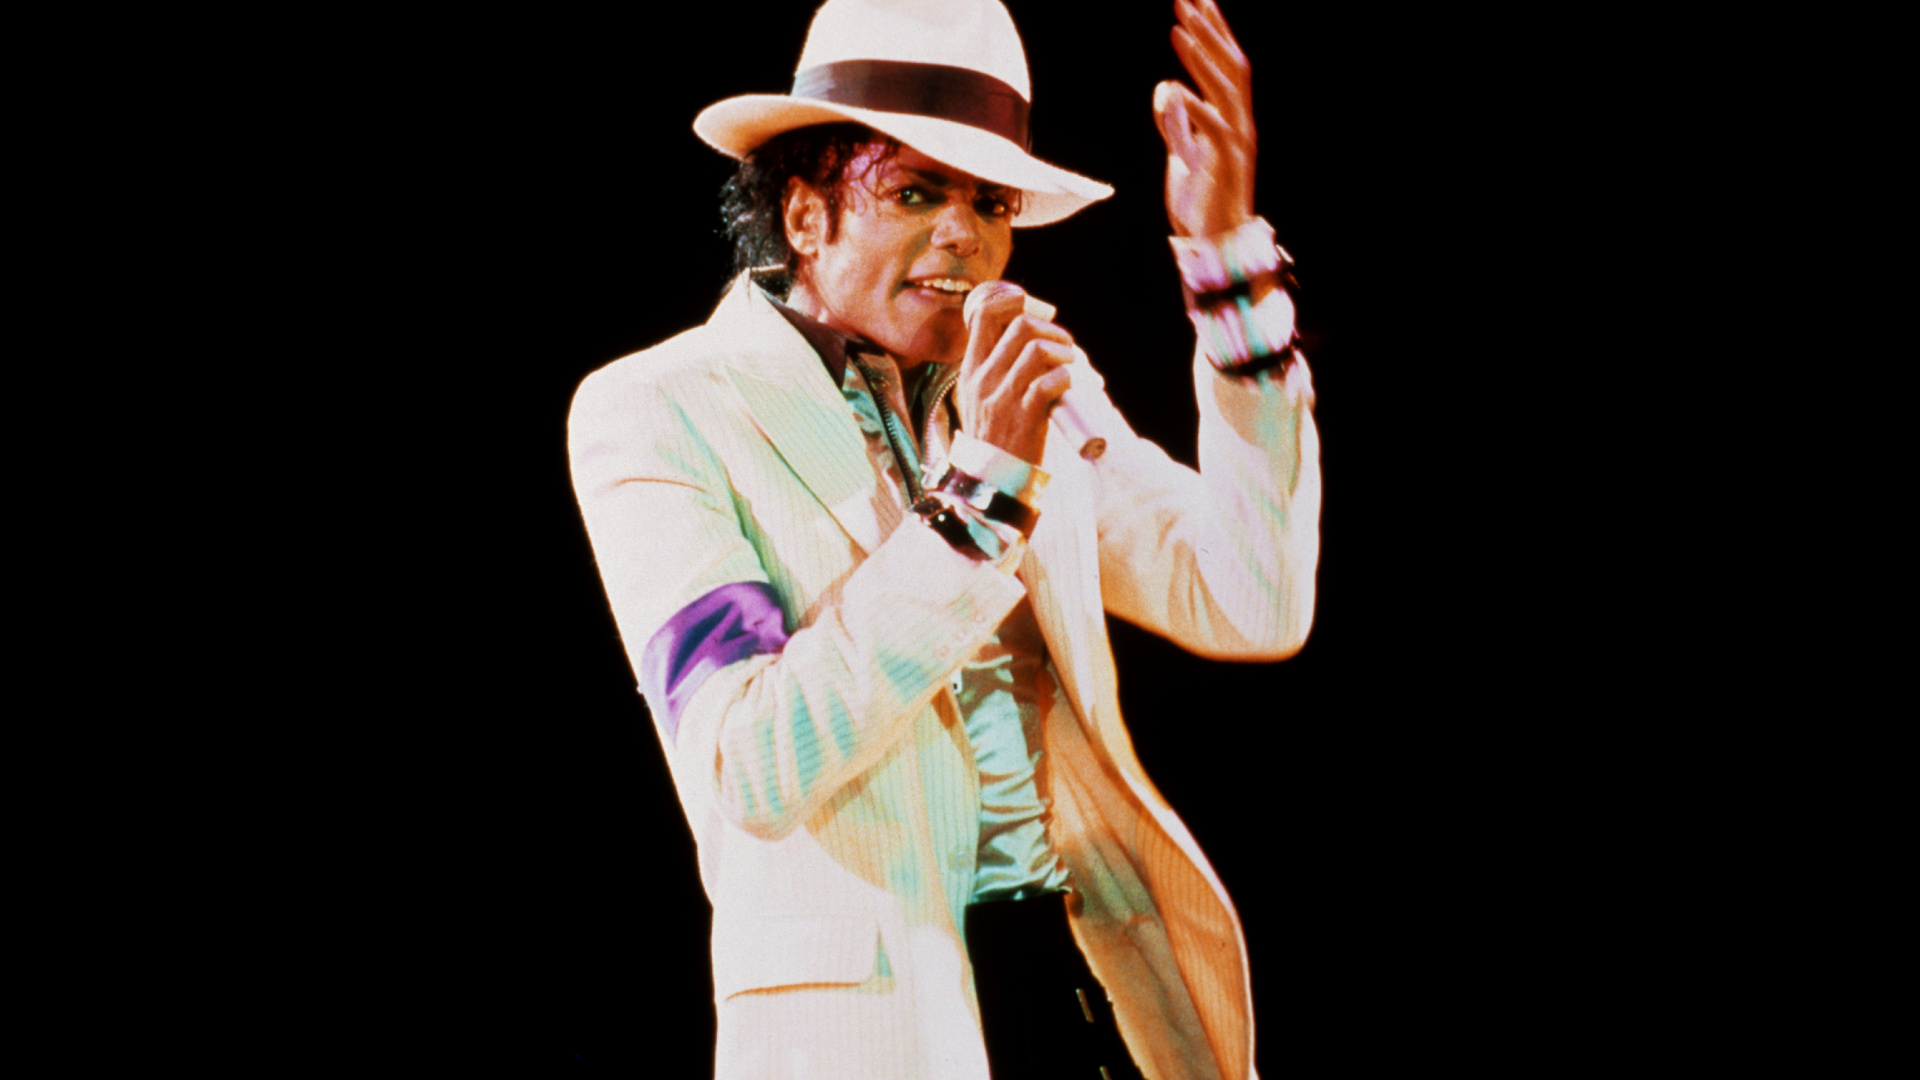 Michael Jackson, Bad, Performance, la Musique de L'artiste, Arts de la Scène. Wallpaper in 1920x1080 Resolution